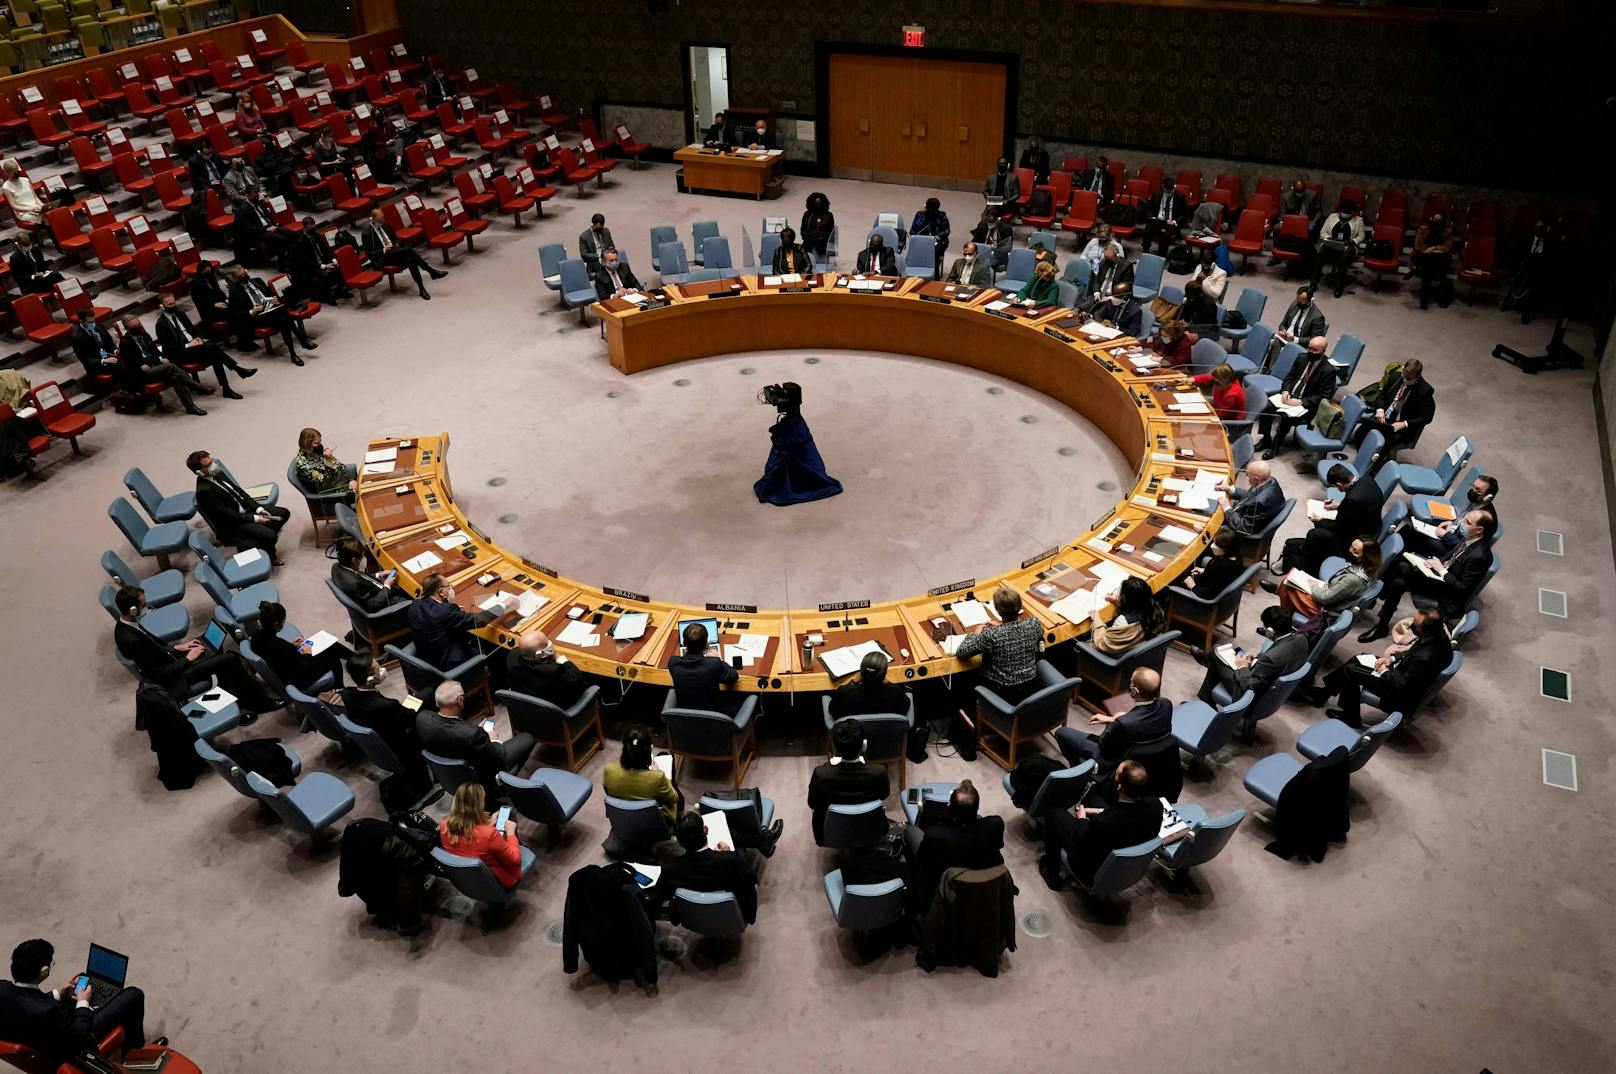 Krisensitzung des UN-Sicherheitsrates zur Ukraine-Krise am Montag, 21. Februar 2022.